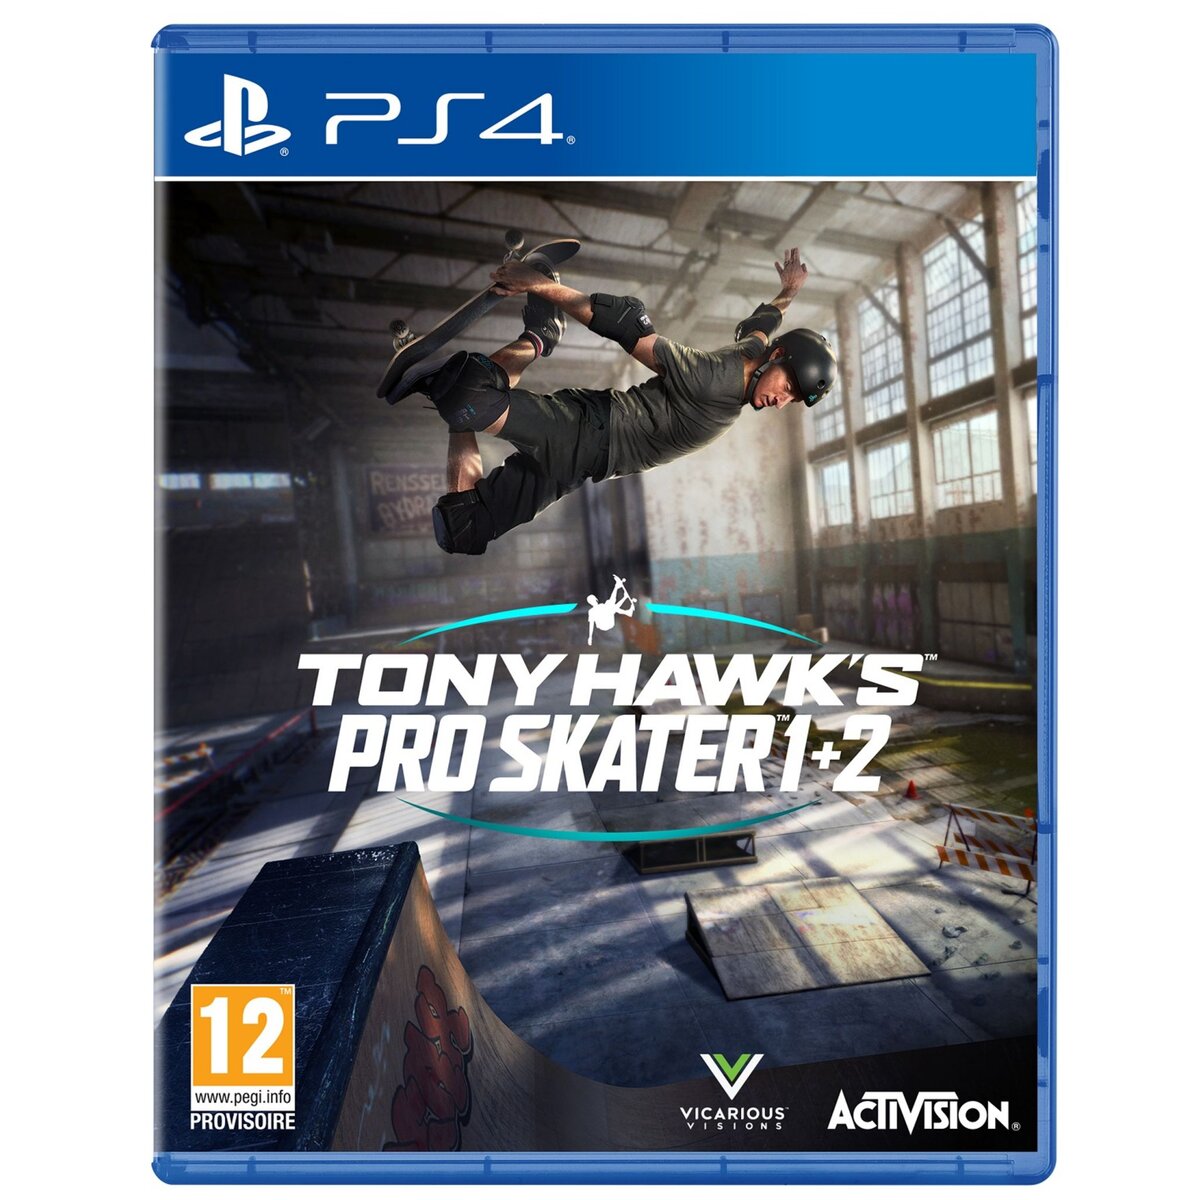 Tony Hawk's Pro Skater 1+2 PS4